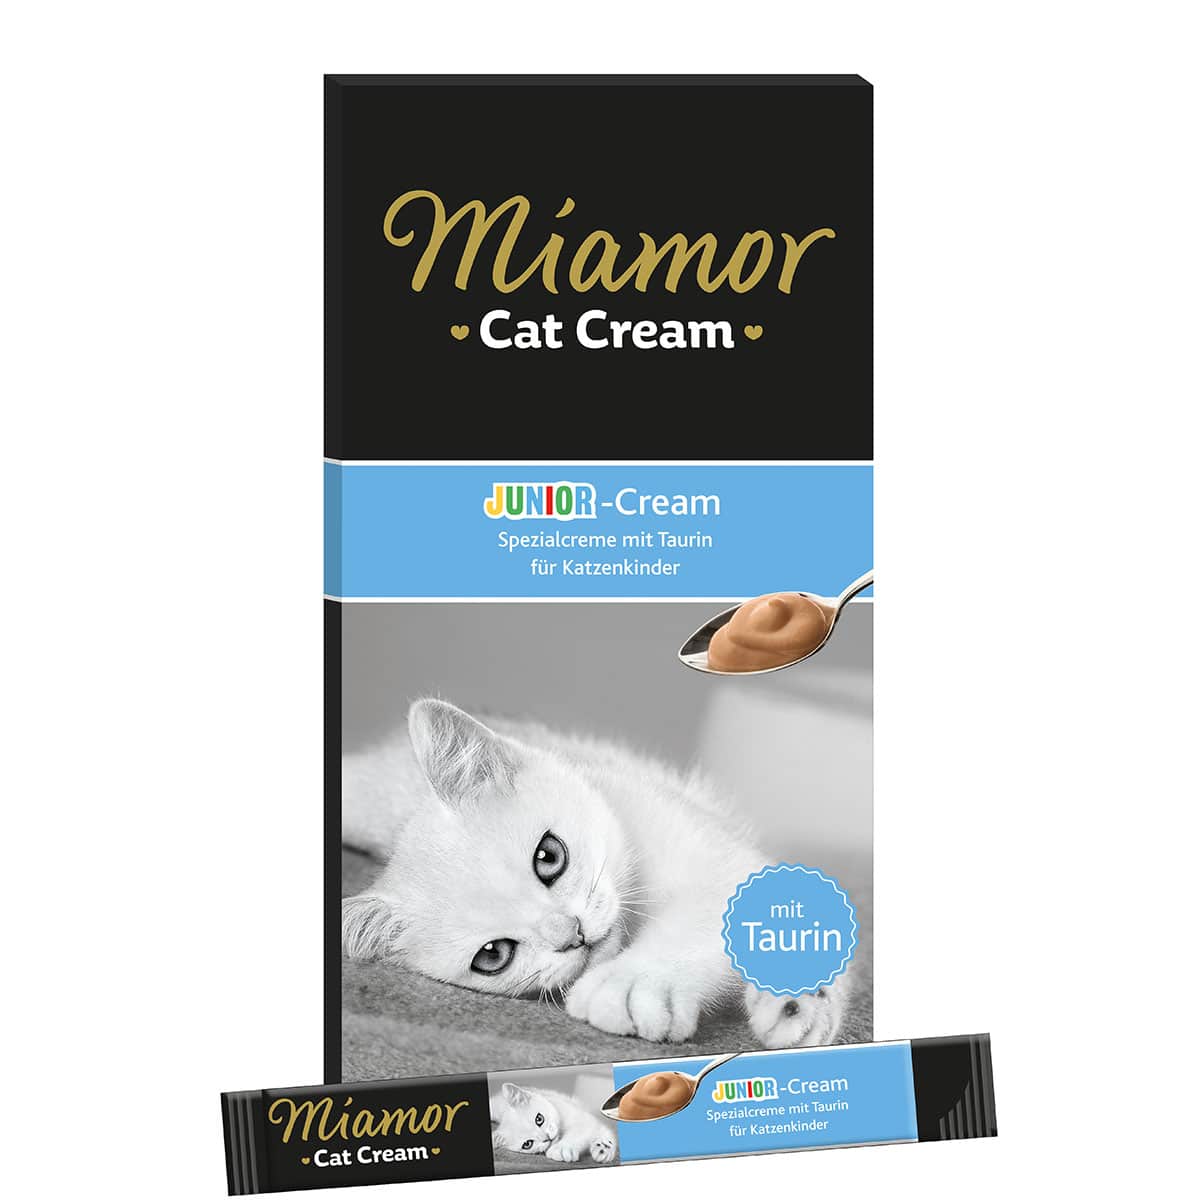 Miamor Cat Cream Junior-Cream 6x15g